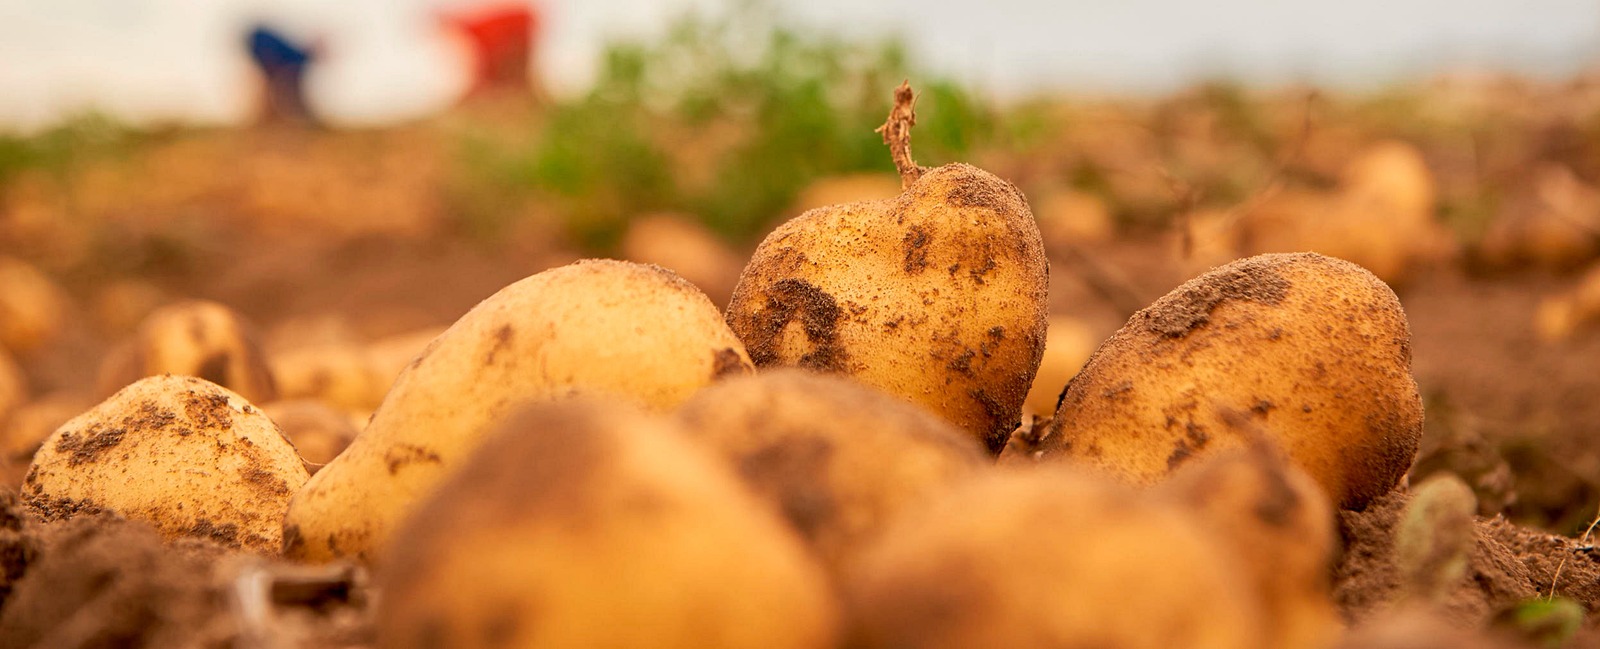 Ruolo dei nutrienti nei diversi stadi di crescita della patata